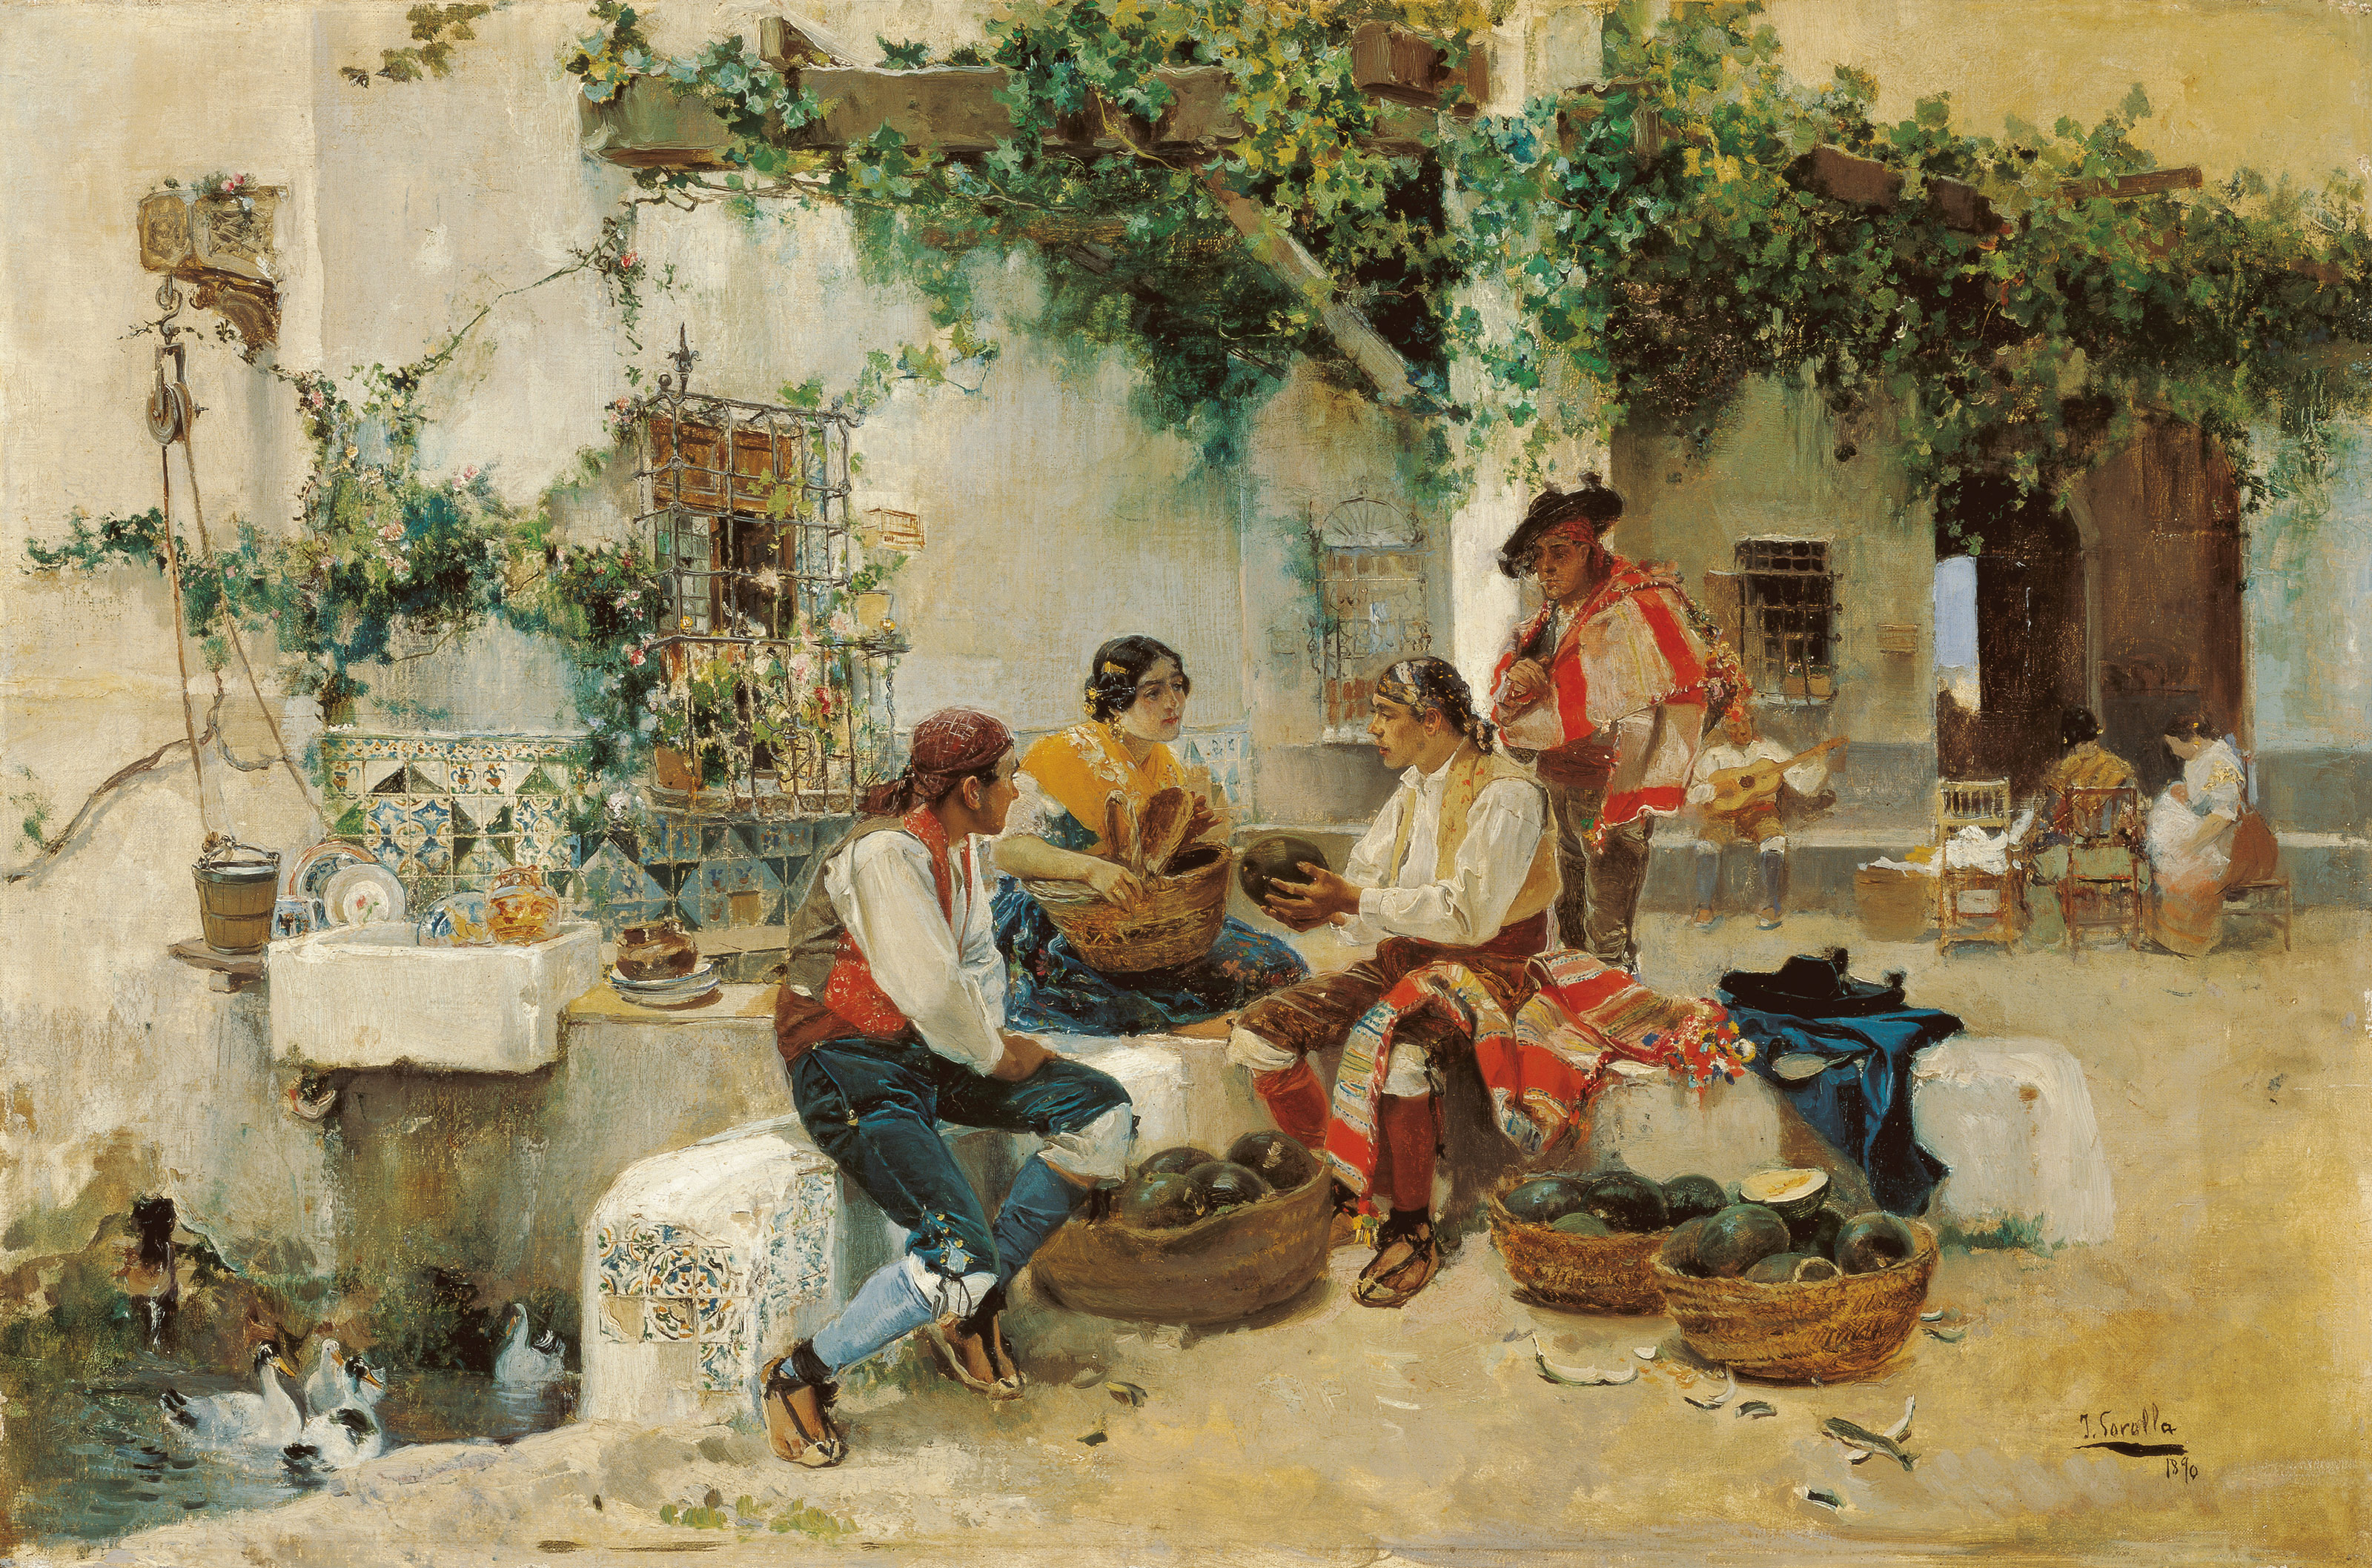  Joaquín Sorolla y Bastida - Vendiendo melones - 1890